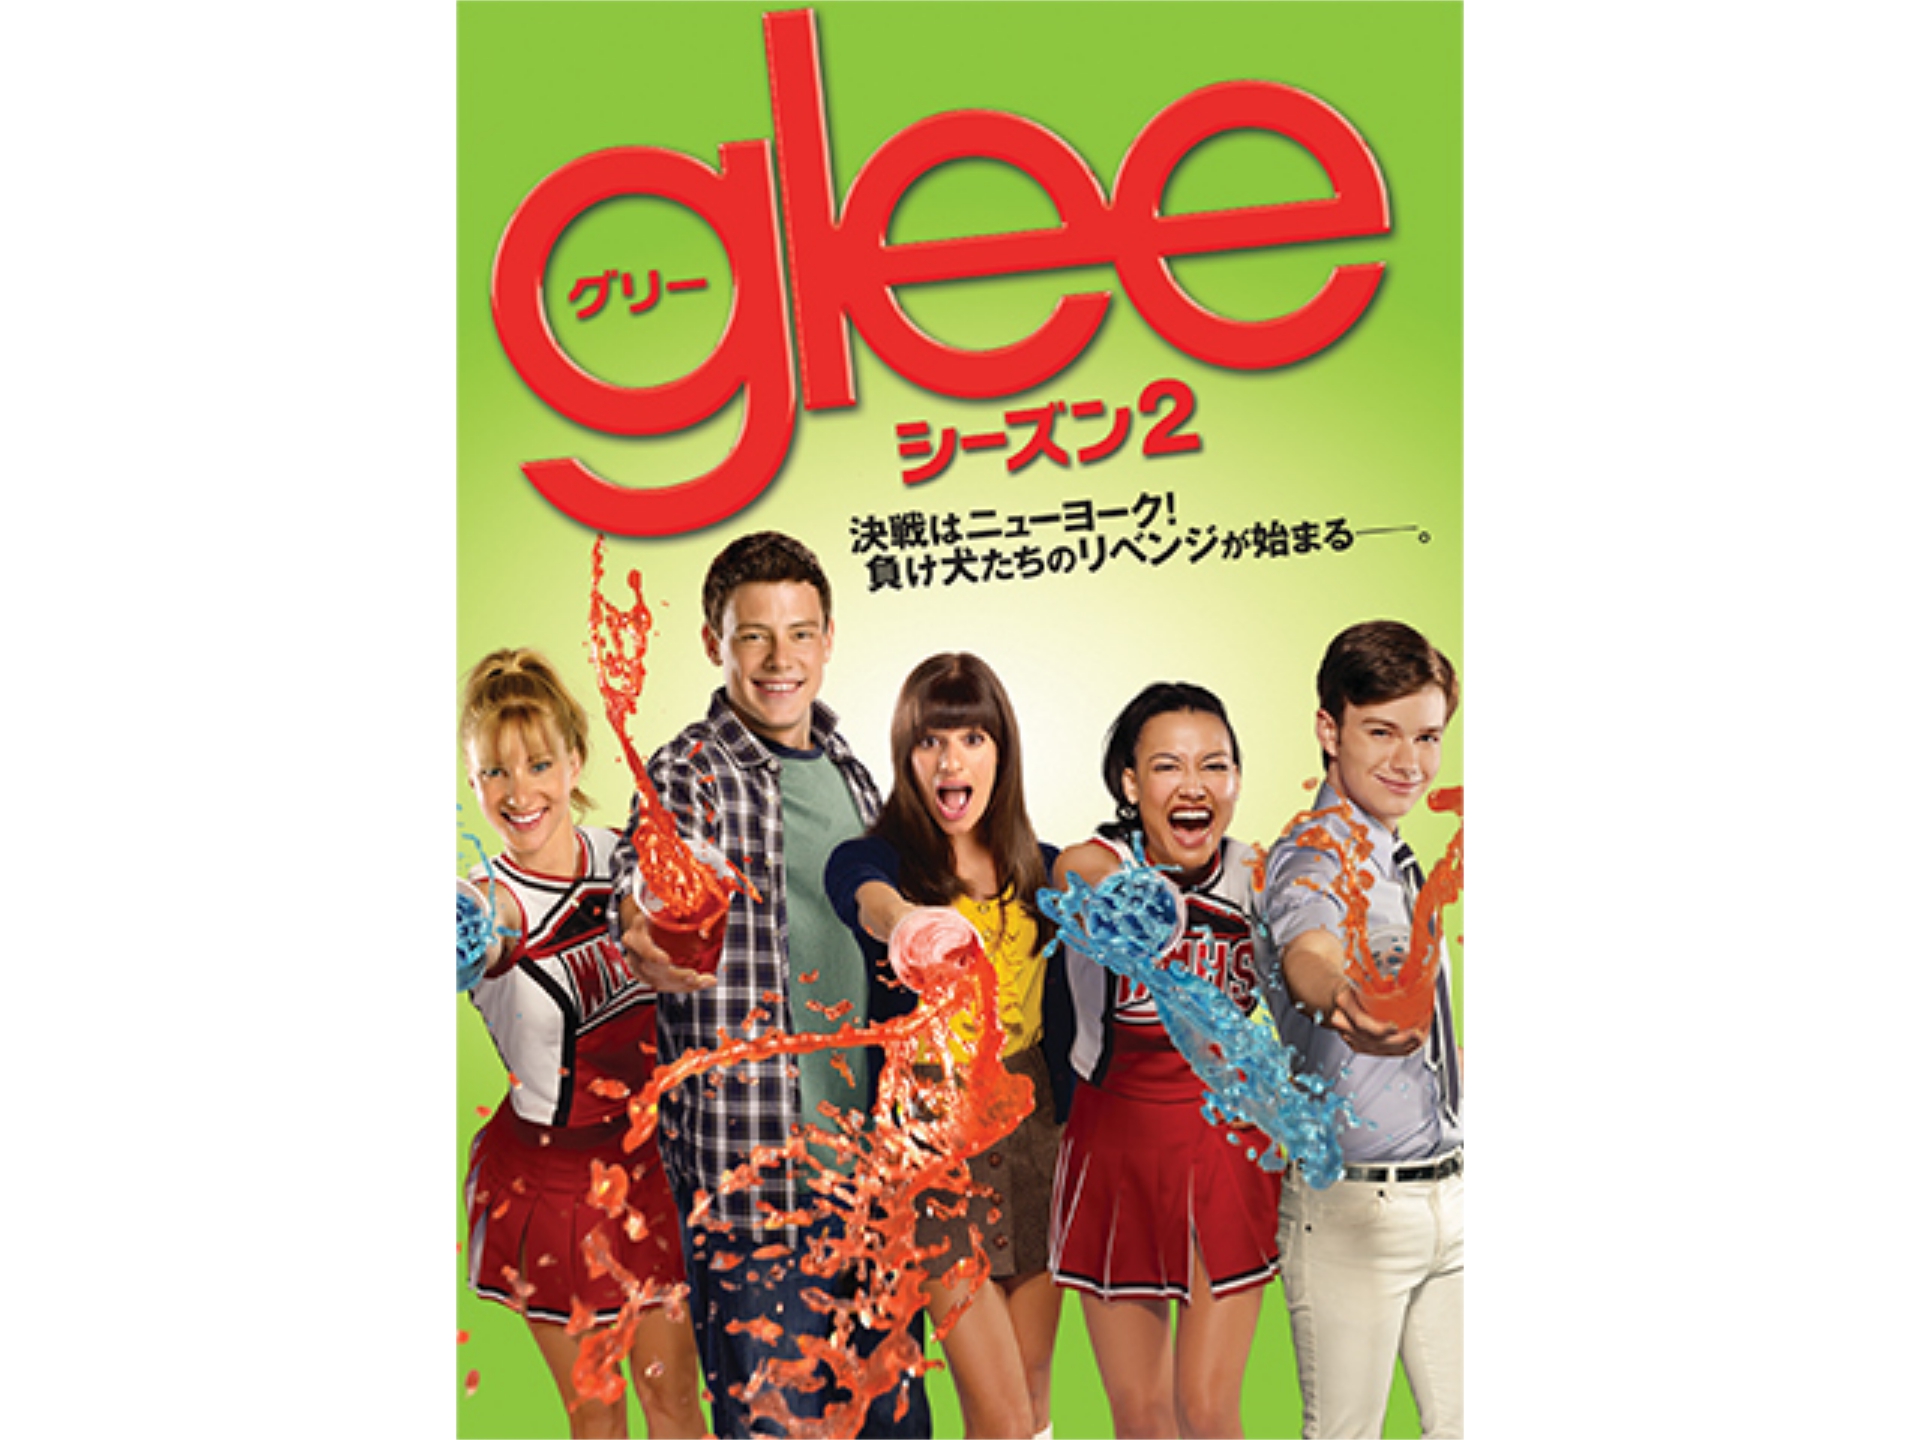 ドラマ Glee グリー シーズン2 の動画まとめ 初月無料 動画配信サービスのビデオマーケット